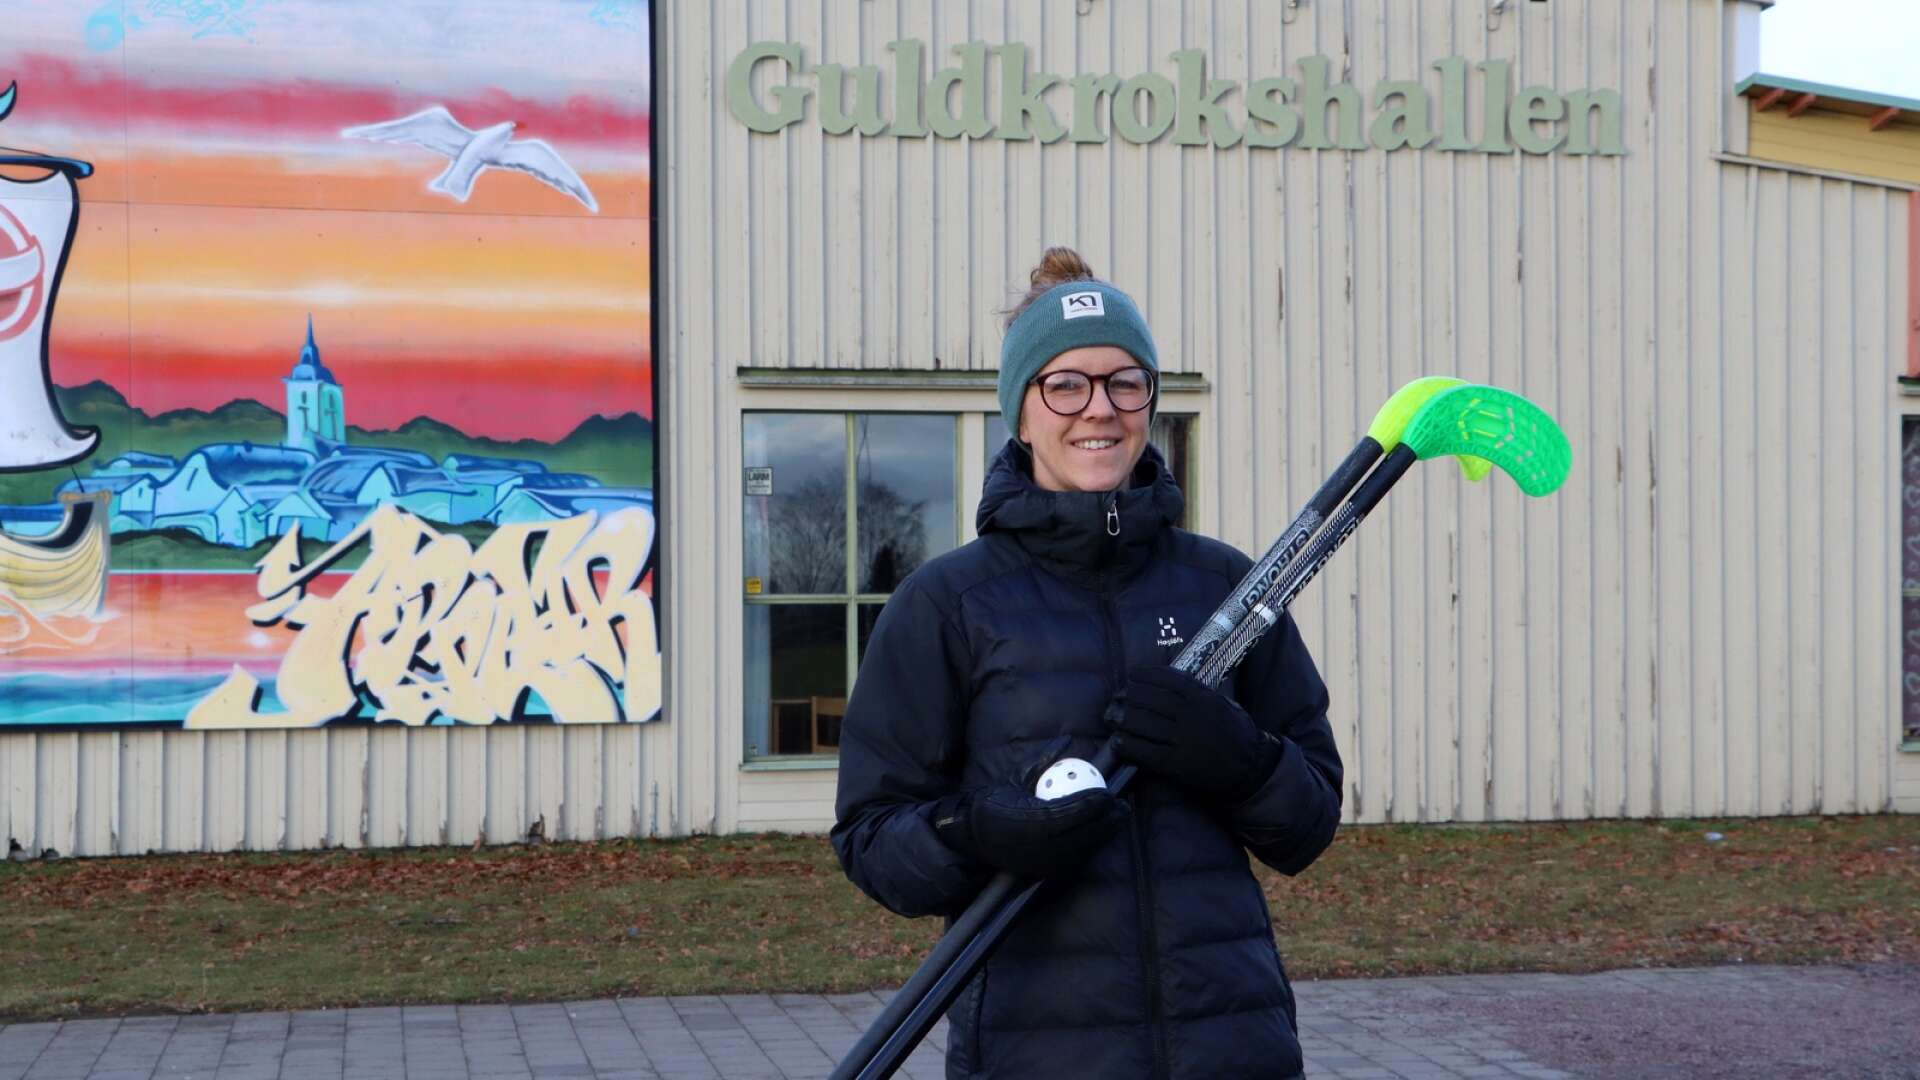 I Guldkrokshallen blir det bland annat innebandy under sportlovet, berättar Hanna Nordlöf, fritidsutvecklare i Hjo kommun. 